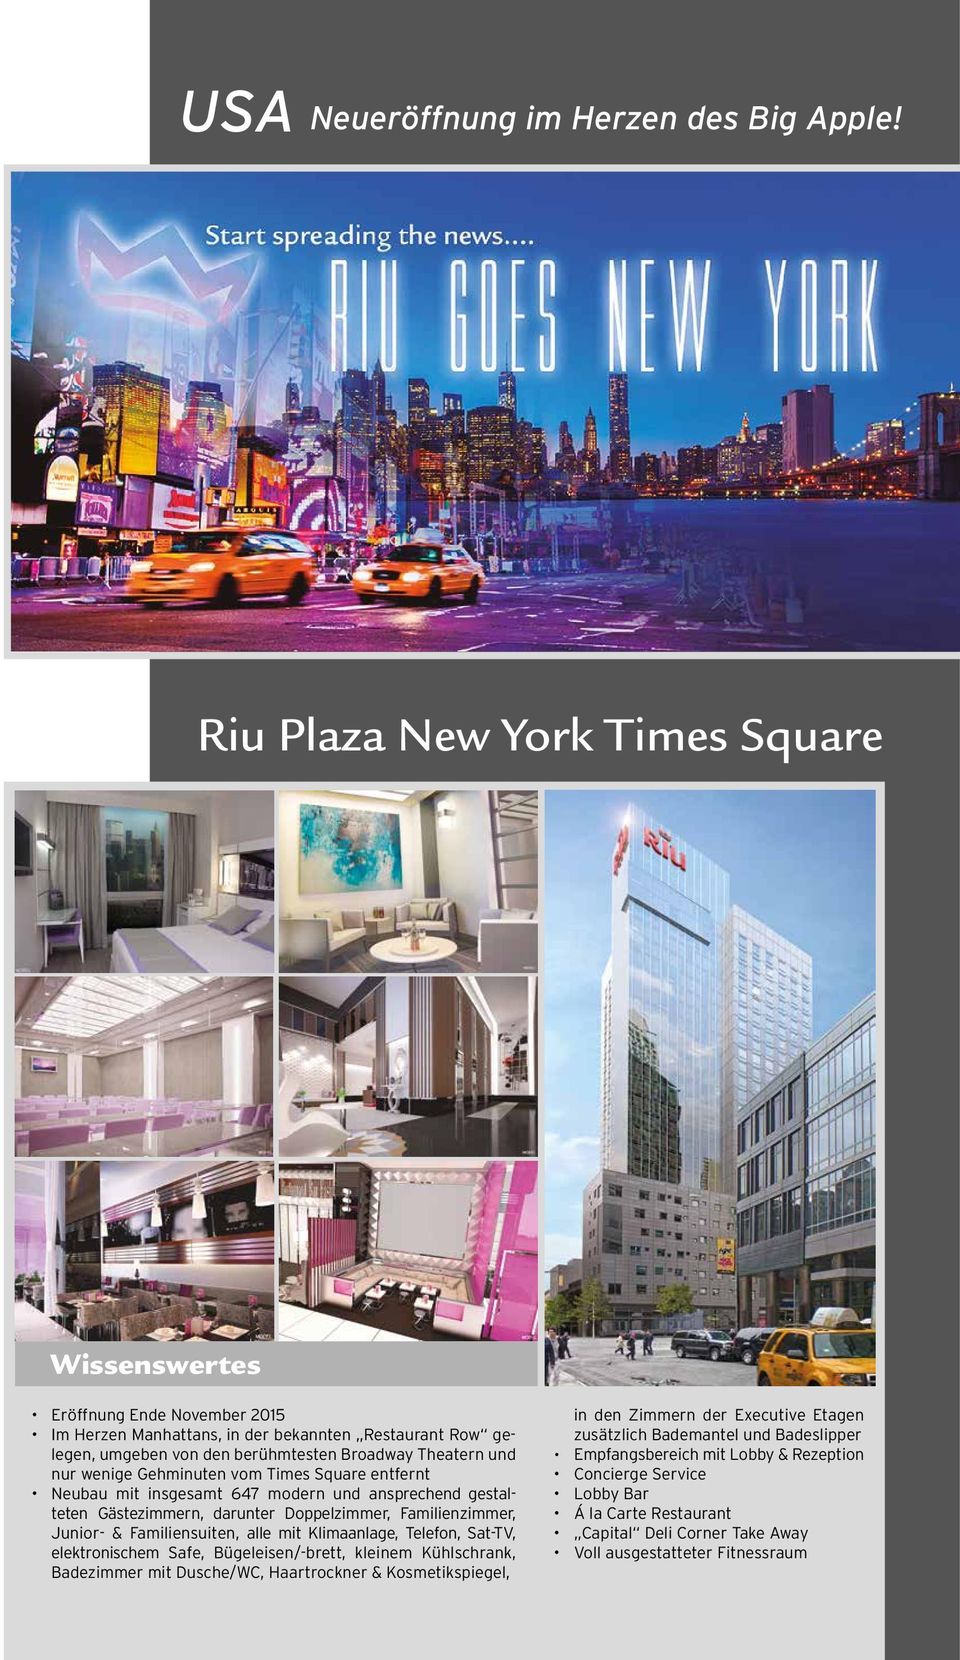 vom Times Square entfernt Neubau mit insgesamt 647 modern und ansprechend gestalteten Gästezimmern, darunter Doppelzimmer, Familienzimmer, Junior- & Familiensuiten, alle mit Klimaanlage, Telefon,